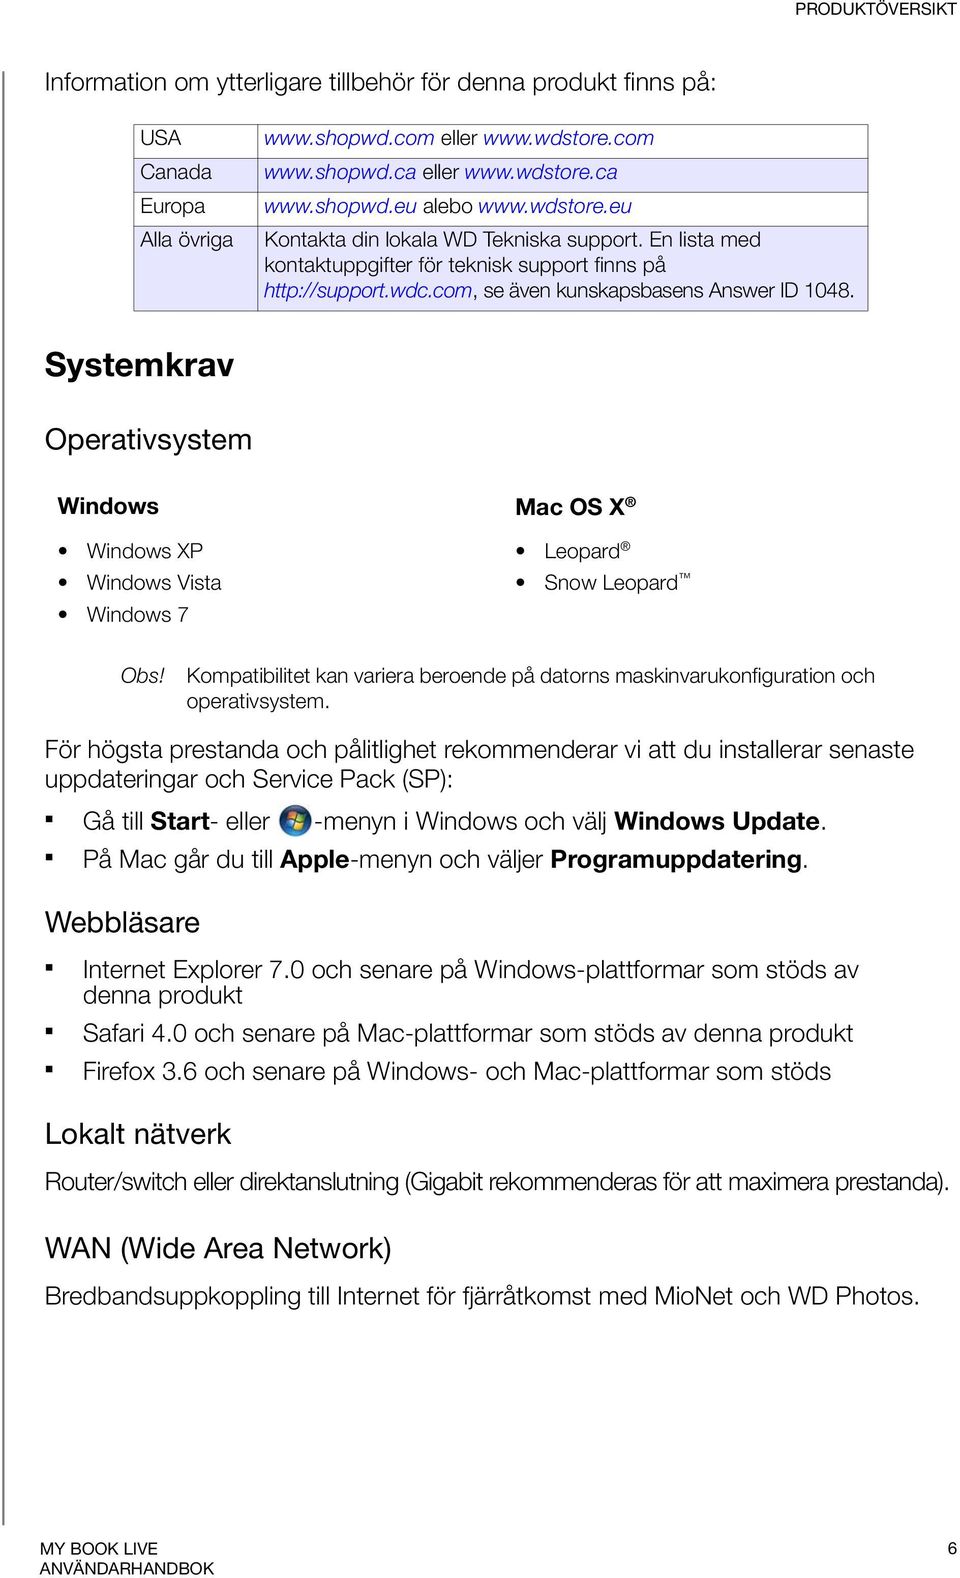 Systemkrav Operativsystem Windows Mac OS X Windows XP Windows Vista Windows 7 Leopard Snow Leopard Obs! Kompatibilitet kan variera beroende på datorns maskinvarukonfiguration och operativsystem.